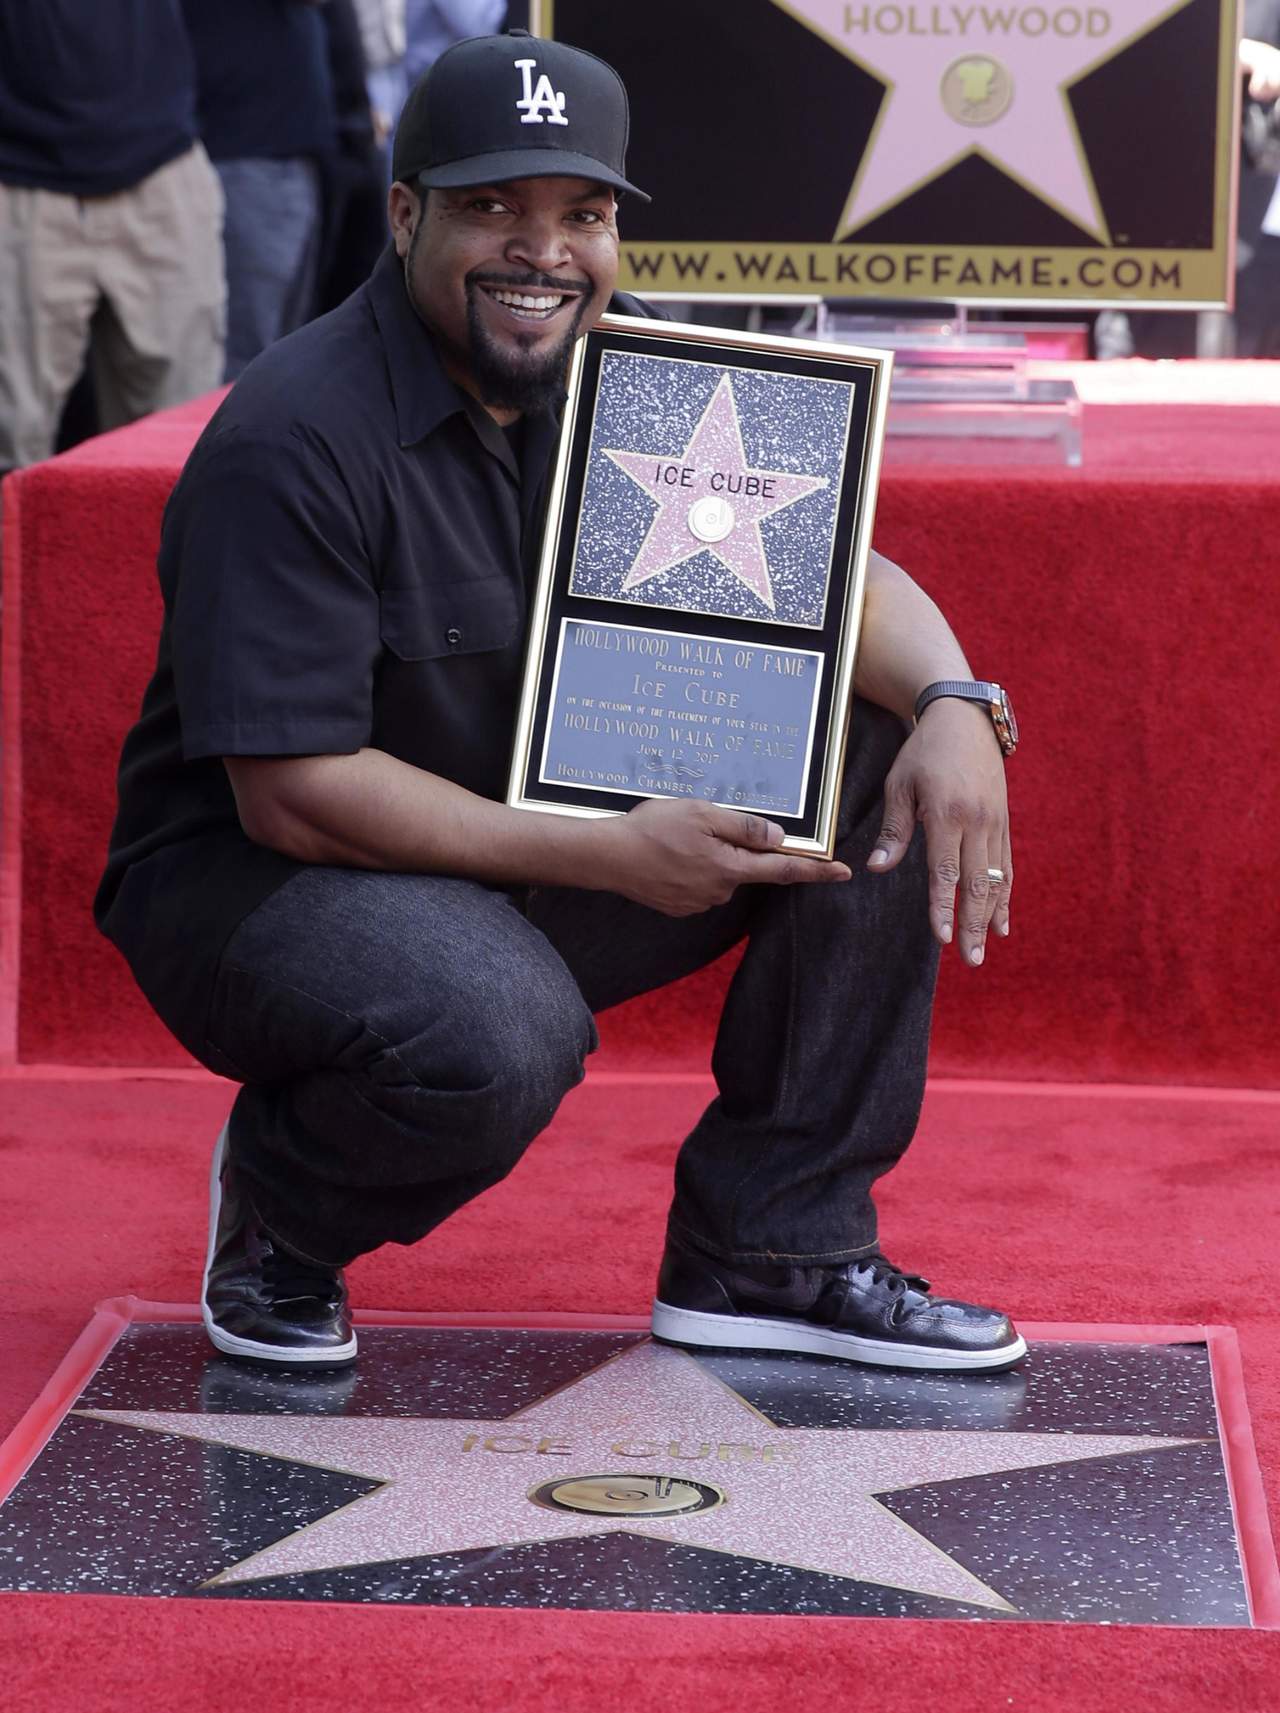 La ceremonia tuvo lugar tres días después del lanzamiento de su álbum 25 'Death Certificate' de Ice Cube que incluye tres nuevos temas, y sólo tres días antes de su cumpleaños número 48. (EFE)